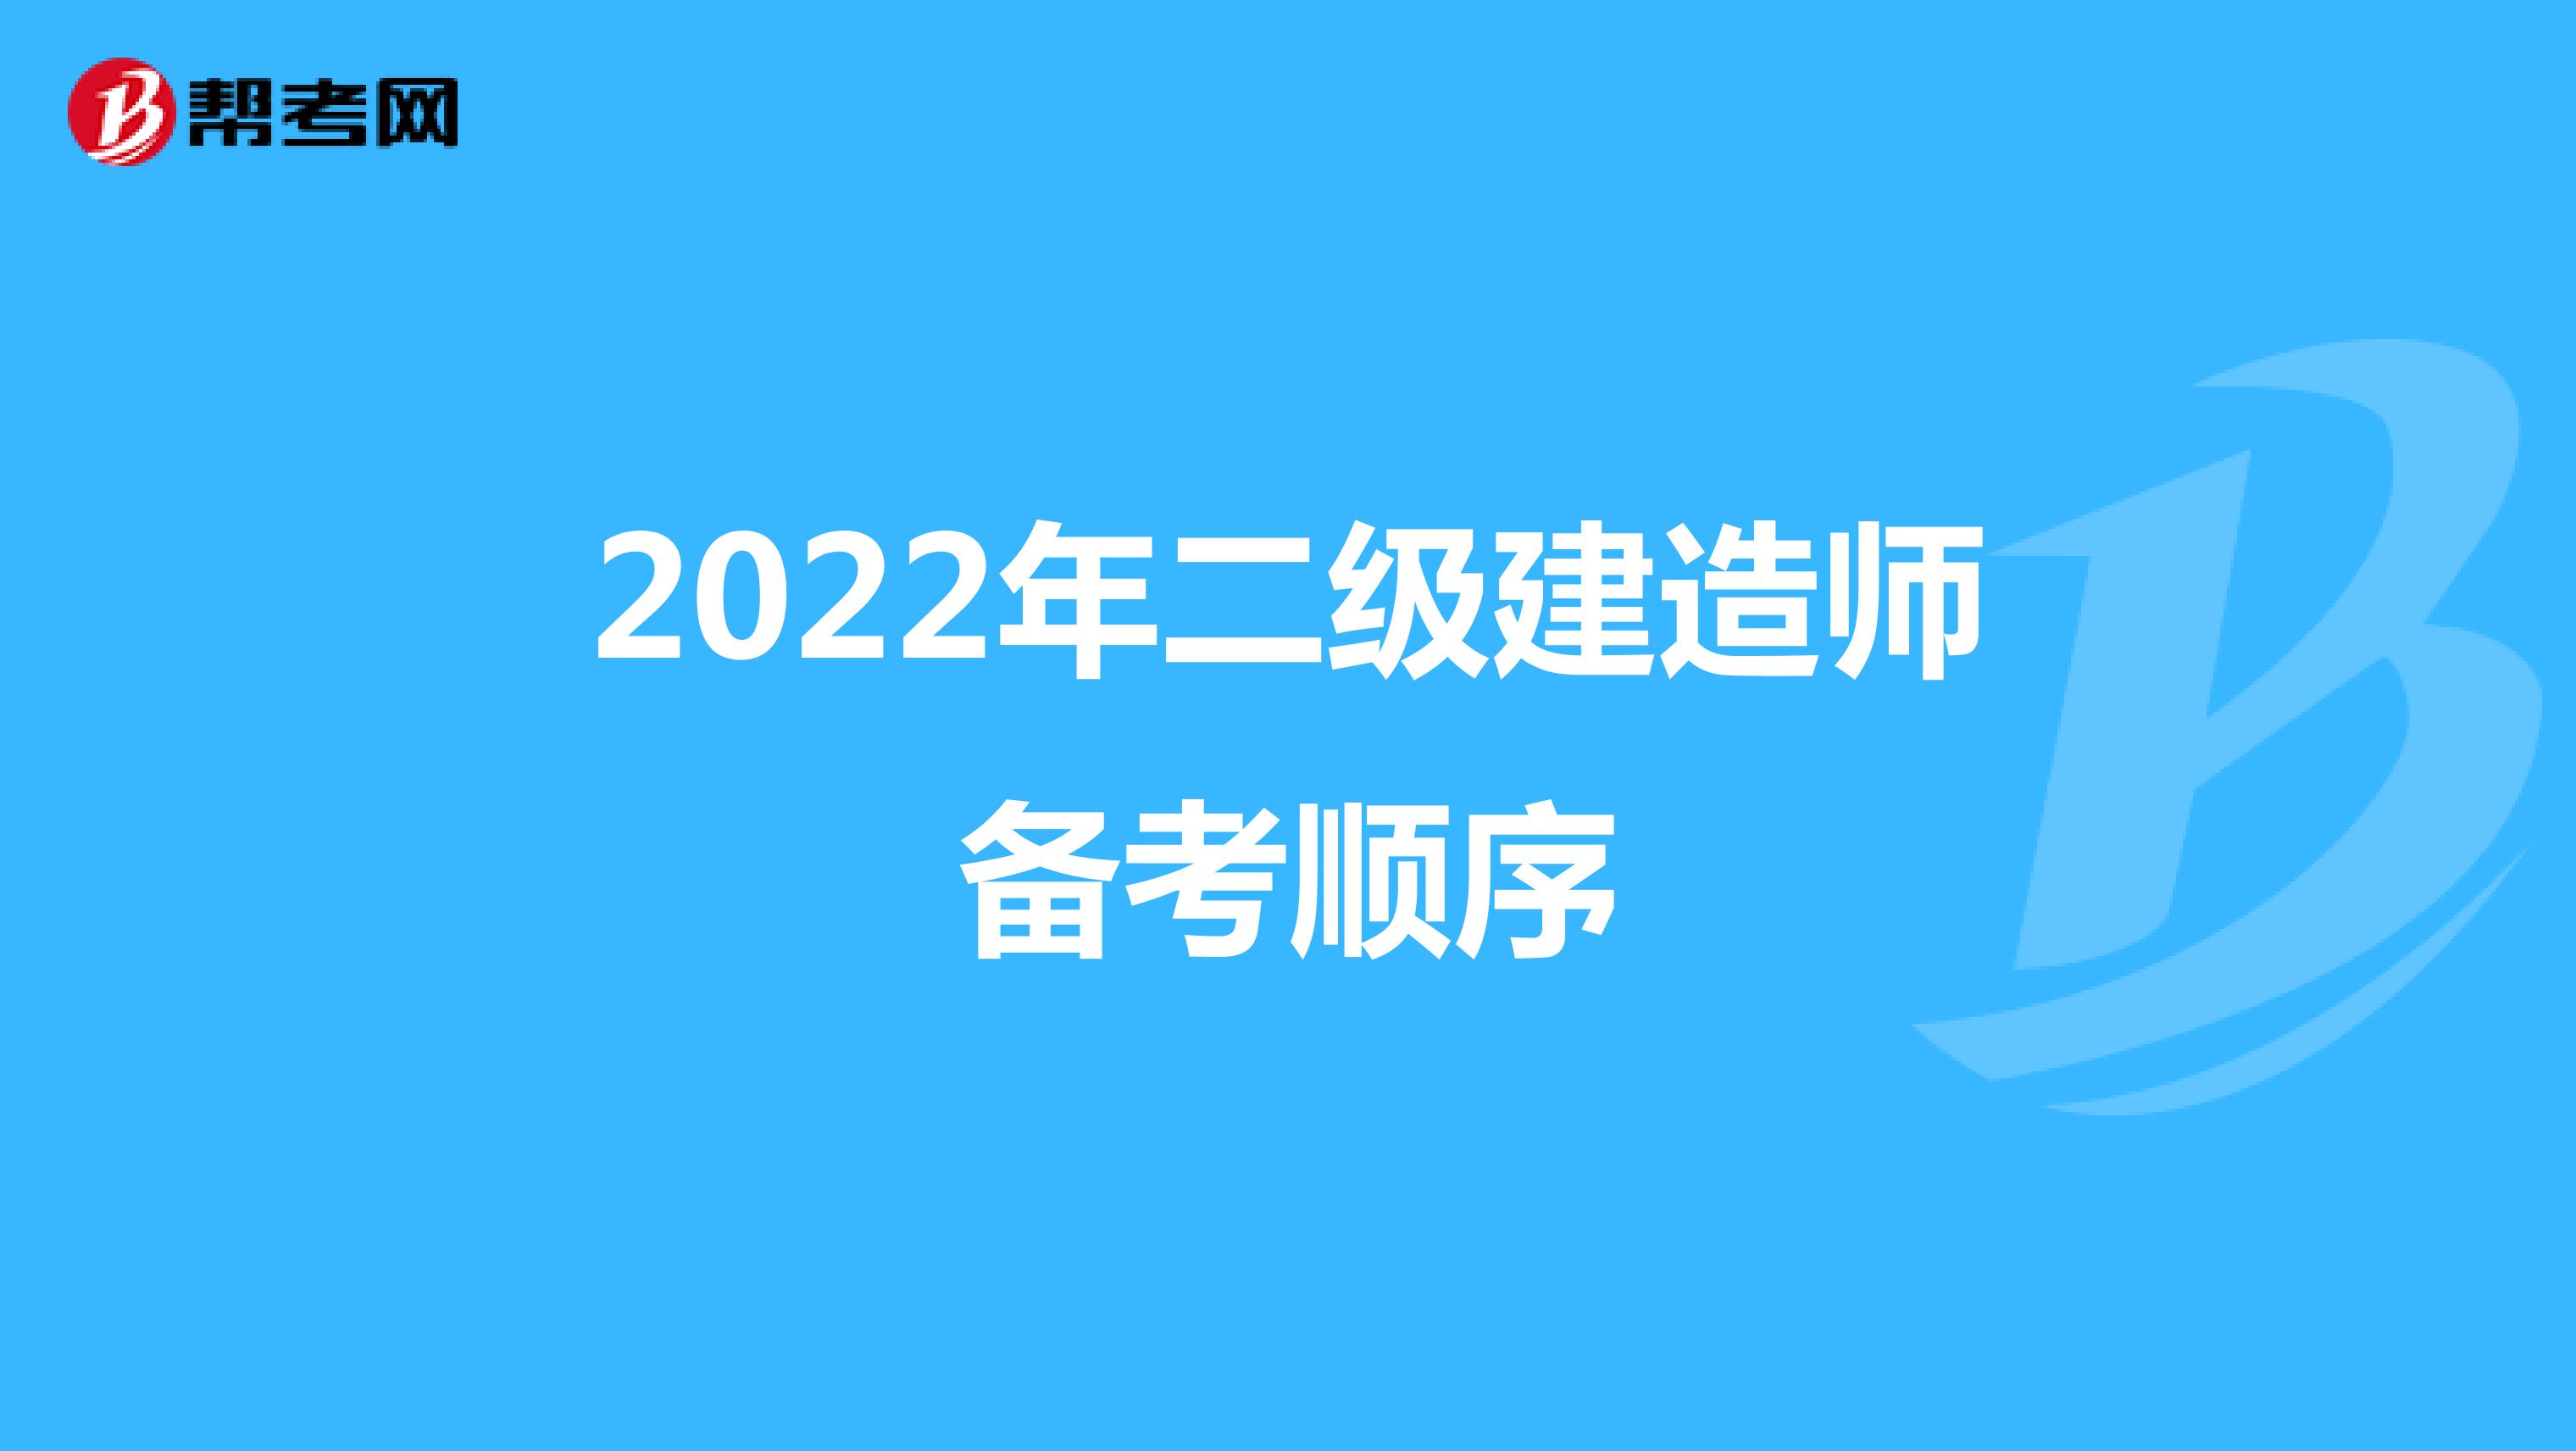 2022年二级建造师备考顺序